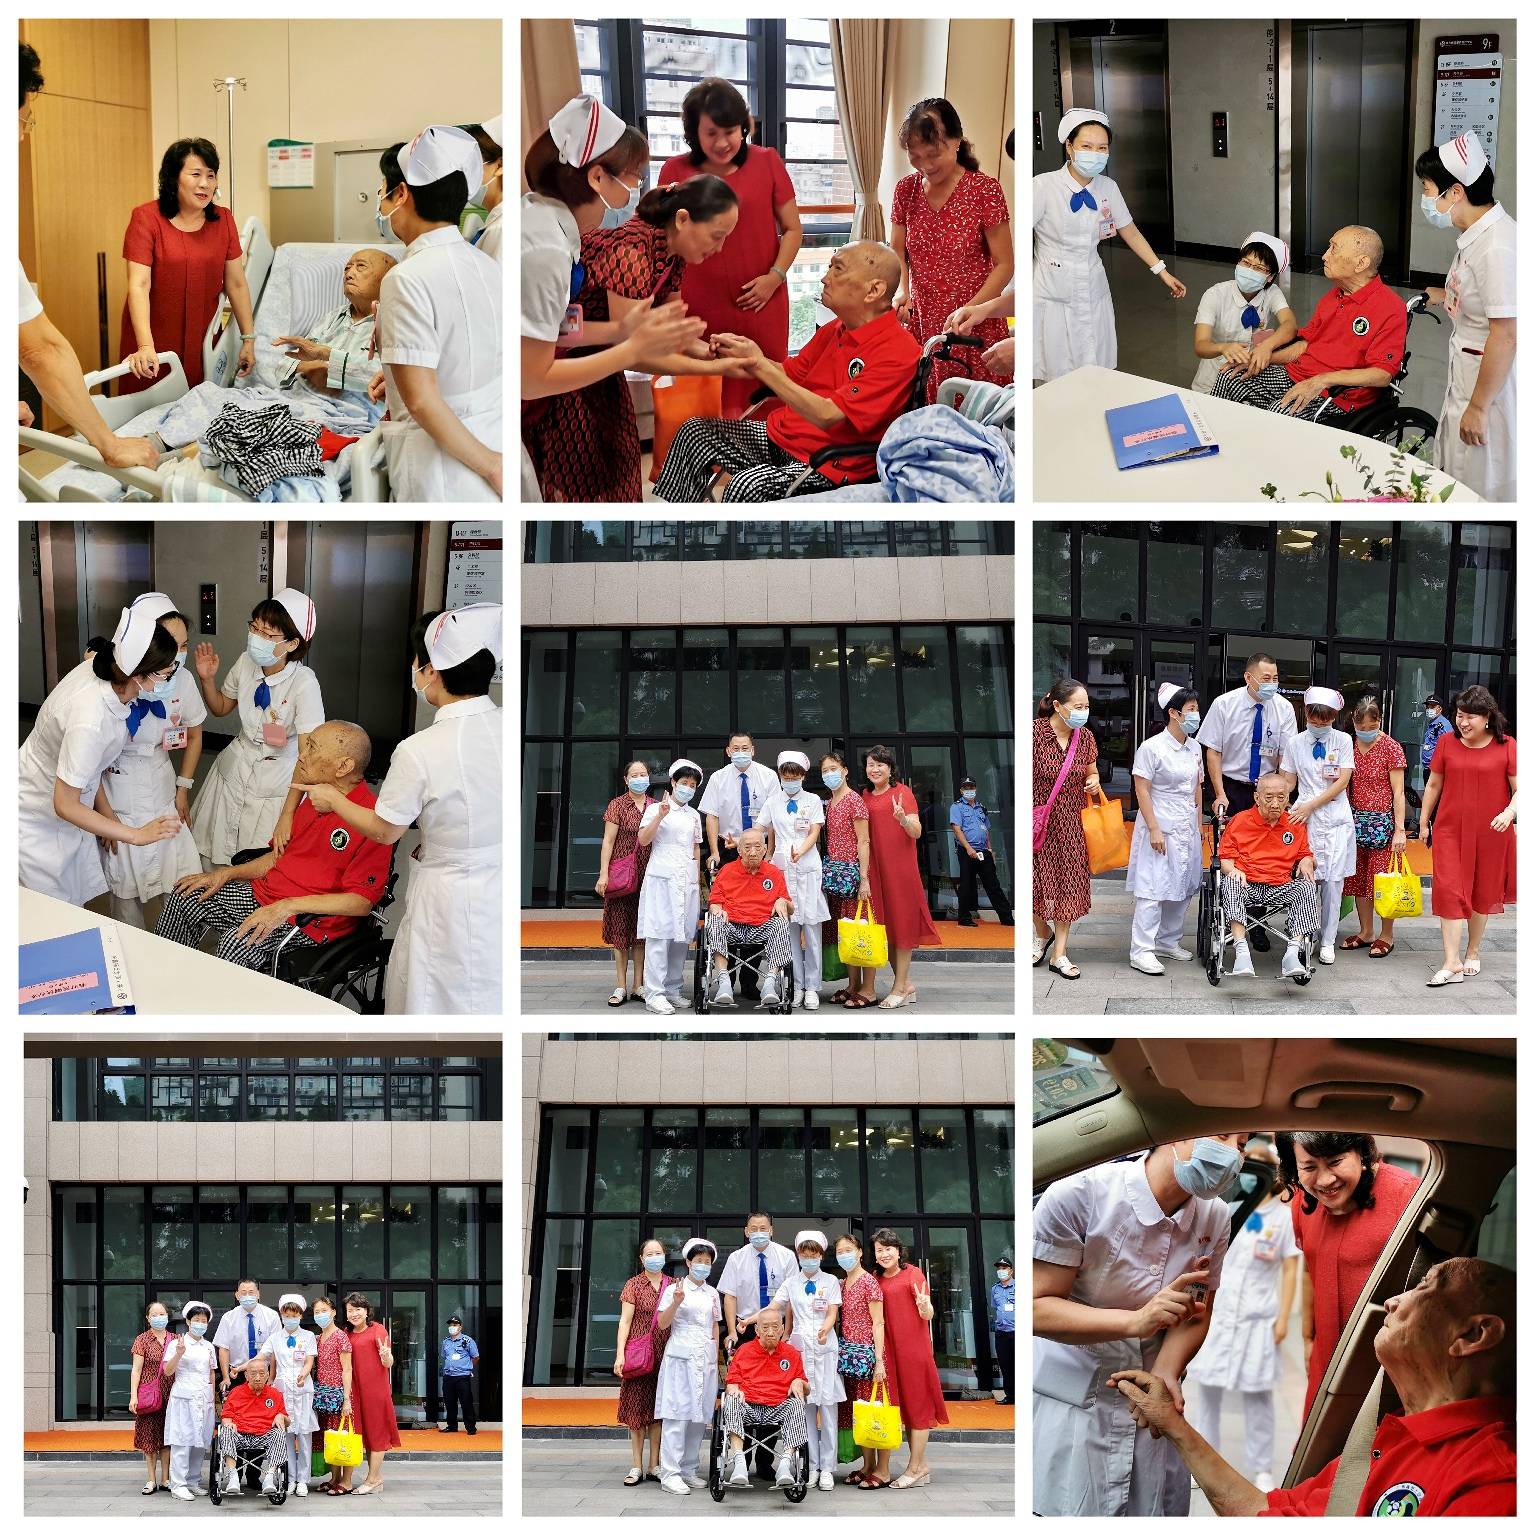 喜欢体育,年轻时还拜师习武,9月11日下午五哥亲自开车到广州南方医院